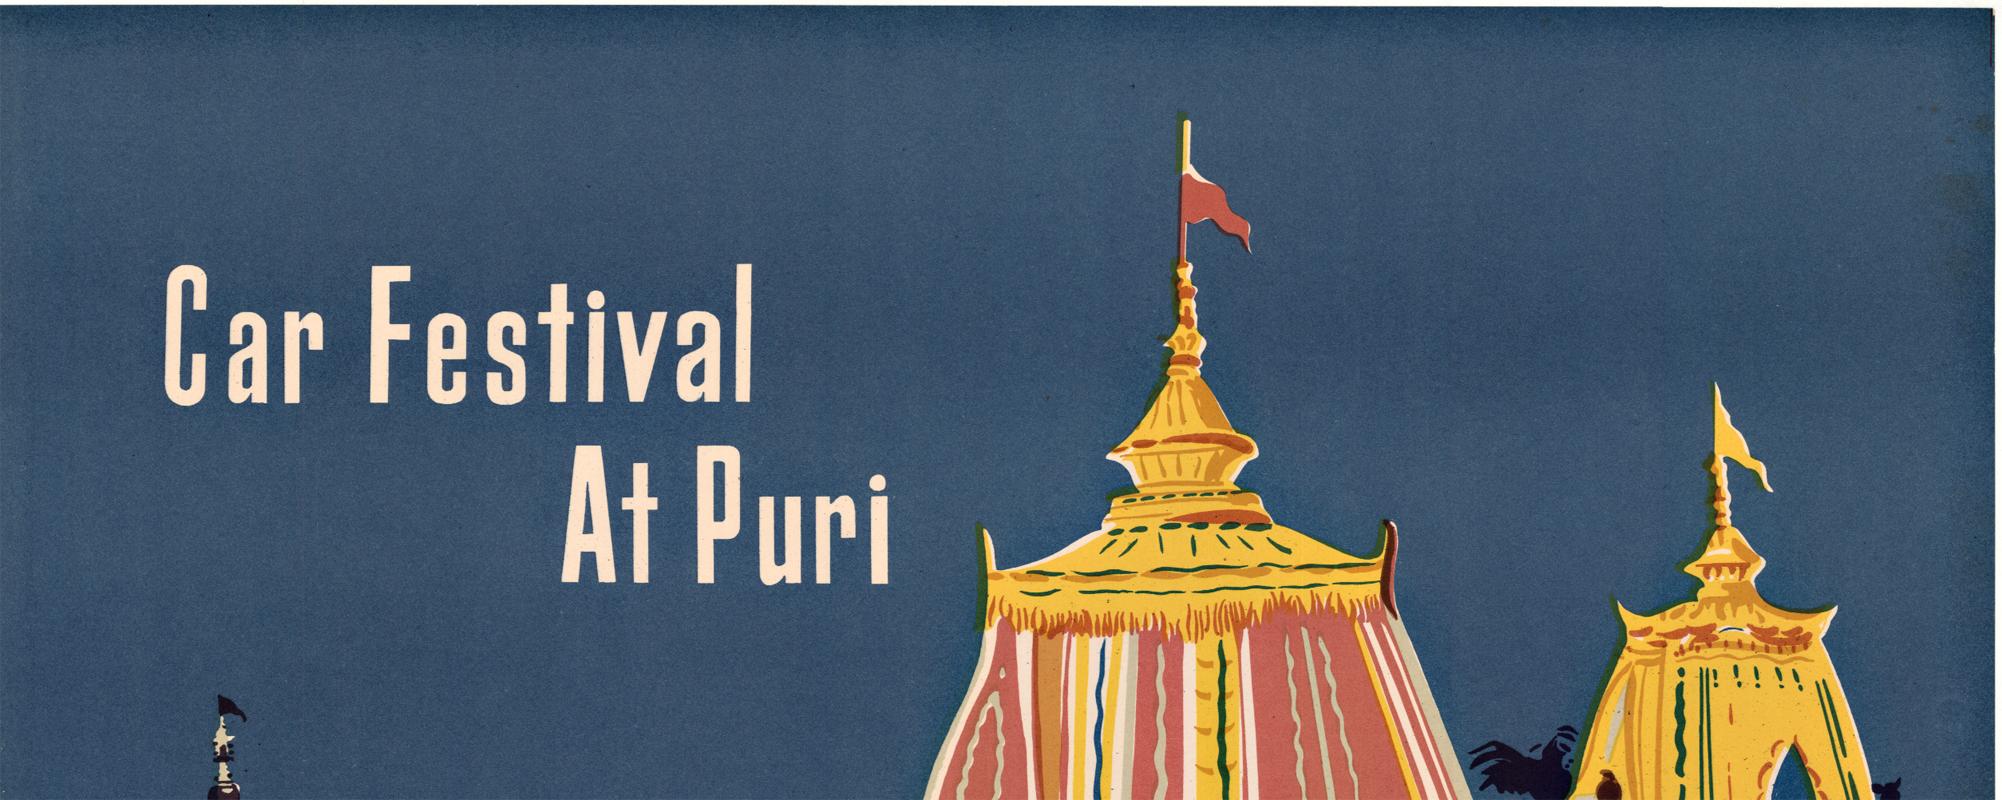 Affiche de voyage vintage originale du Festival des voitures de Puri en Inde - Print de Unknown